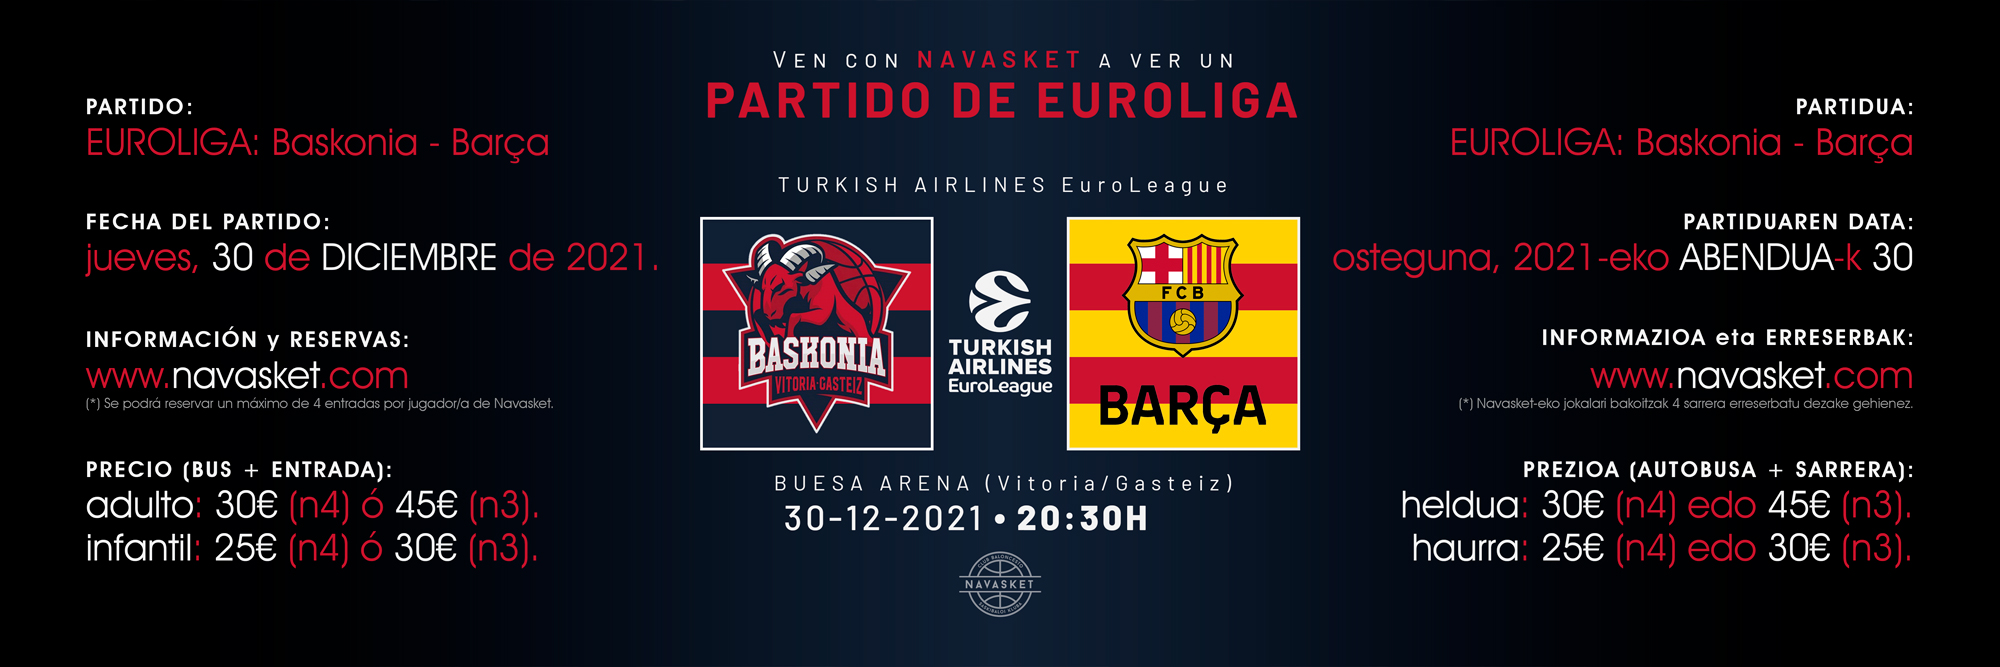 PARTIDO EUROLEAGUE | Baskonia - Barça (30-12-2021)